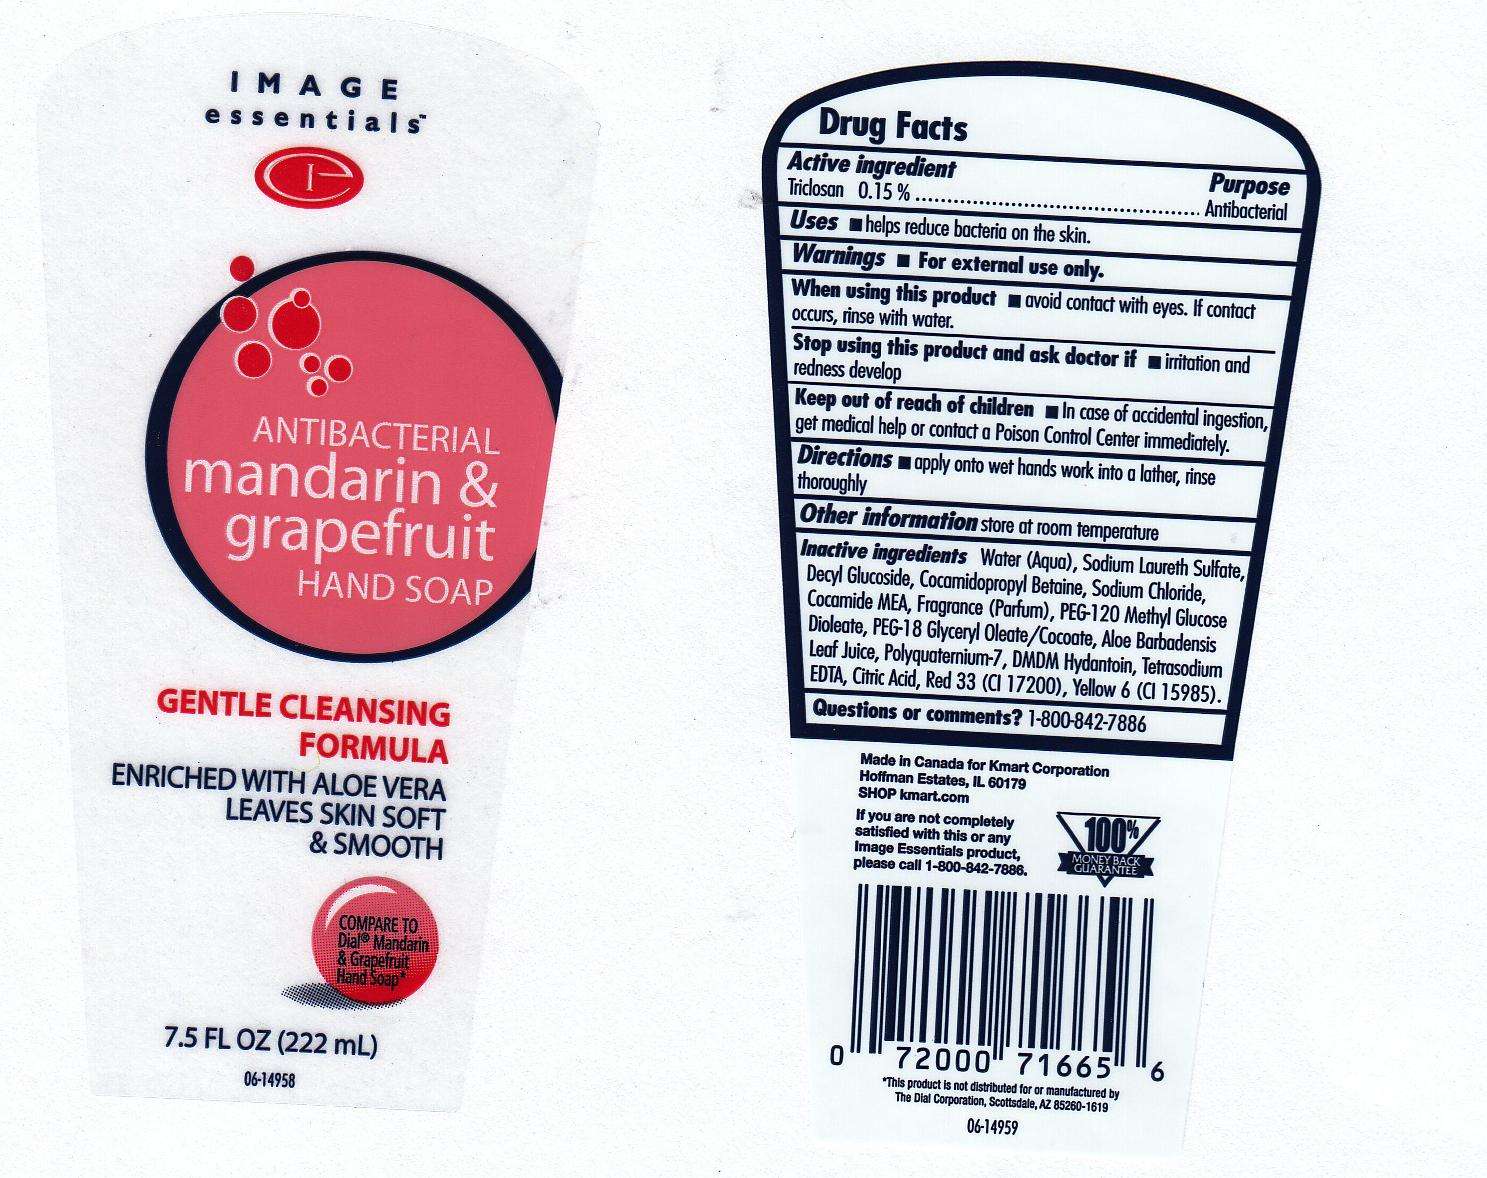 Antibacterial Mandarin and Grapefruit Handsoap